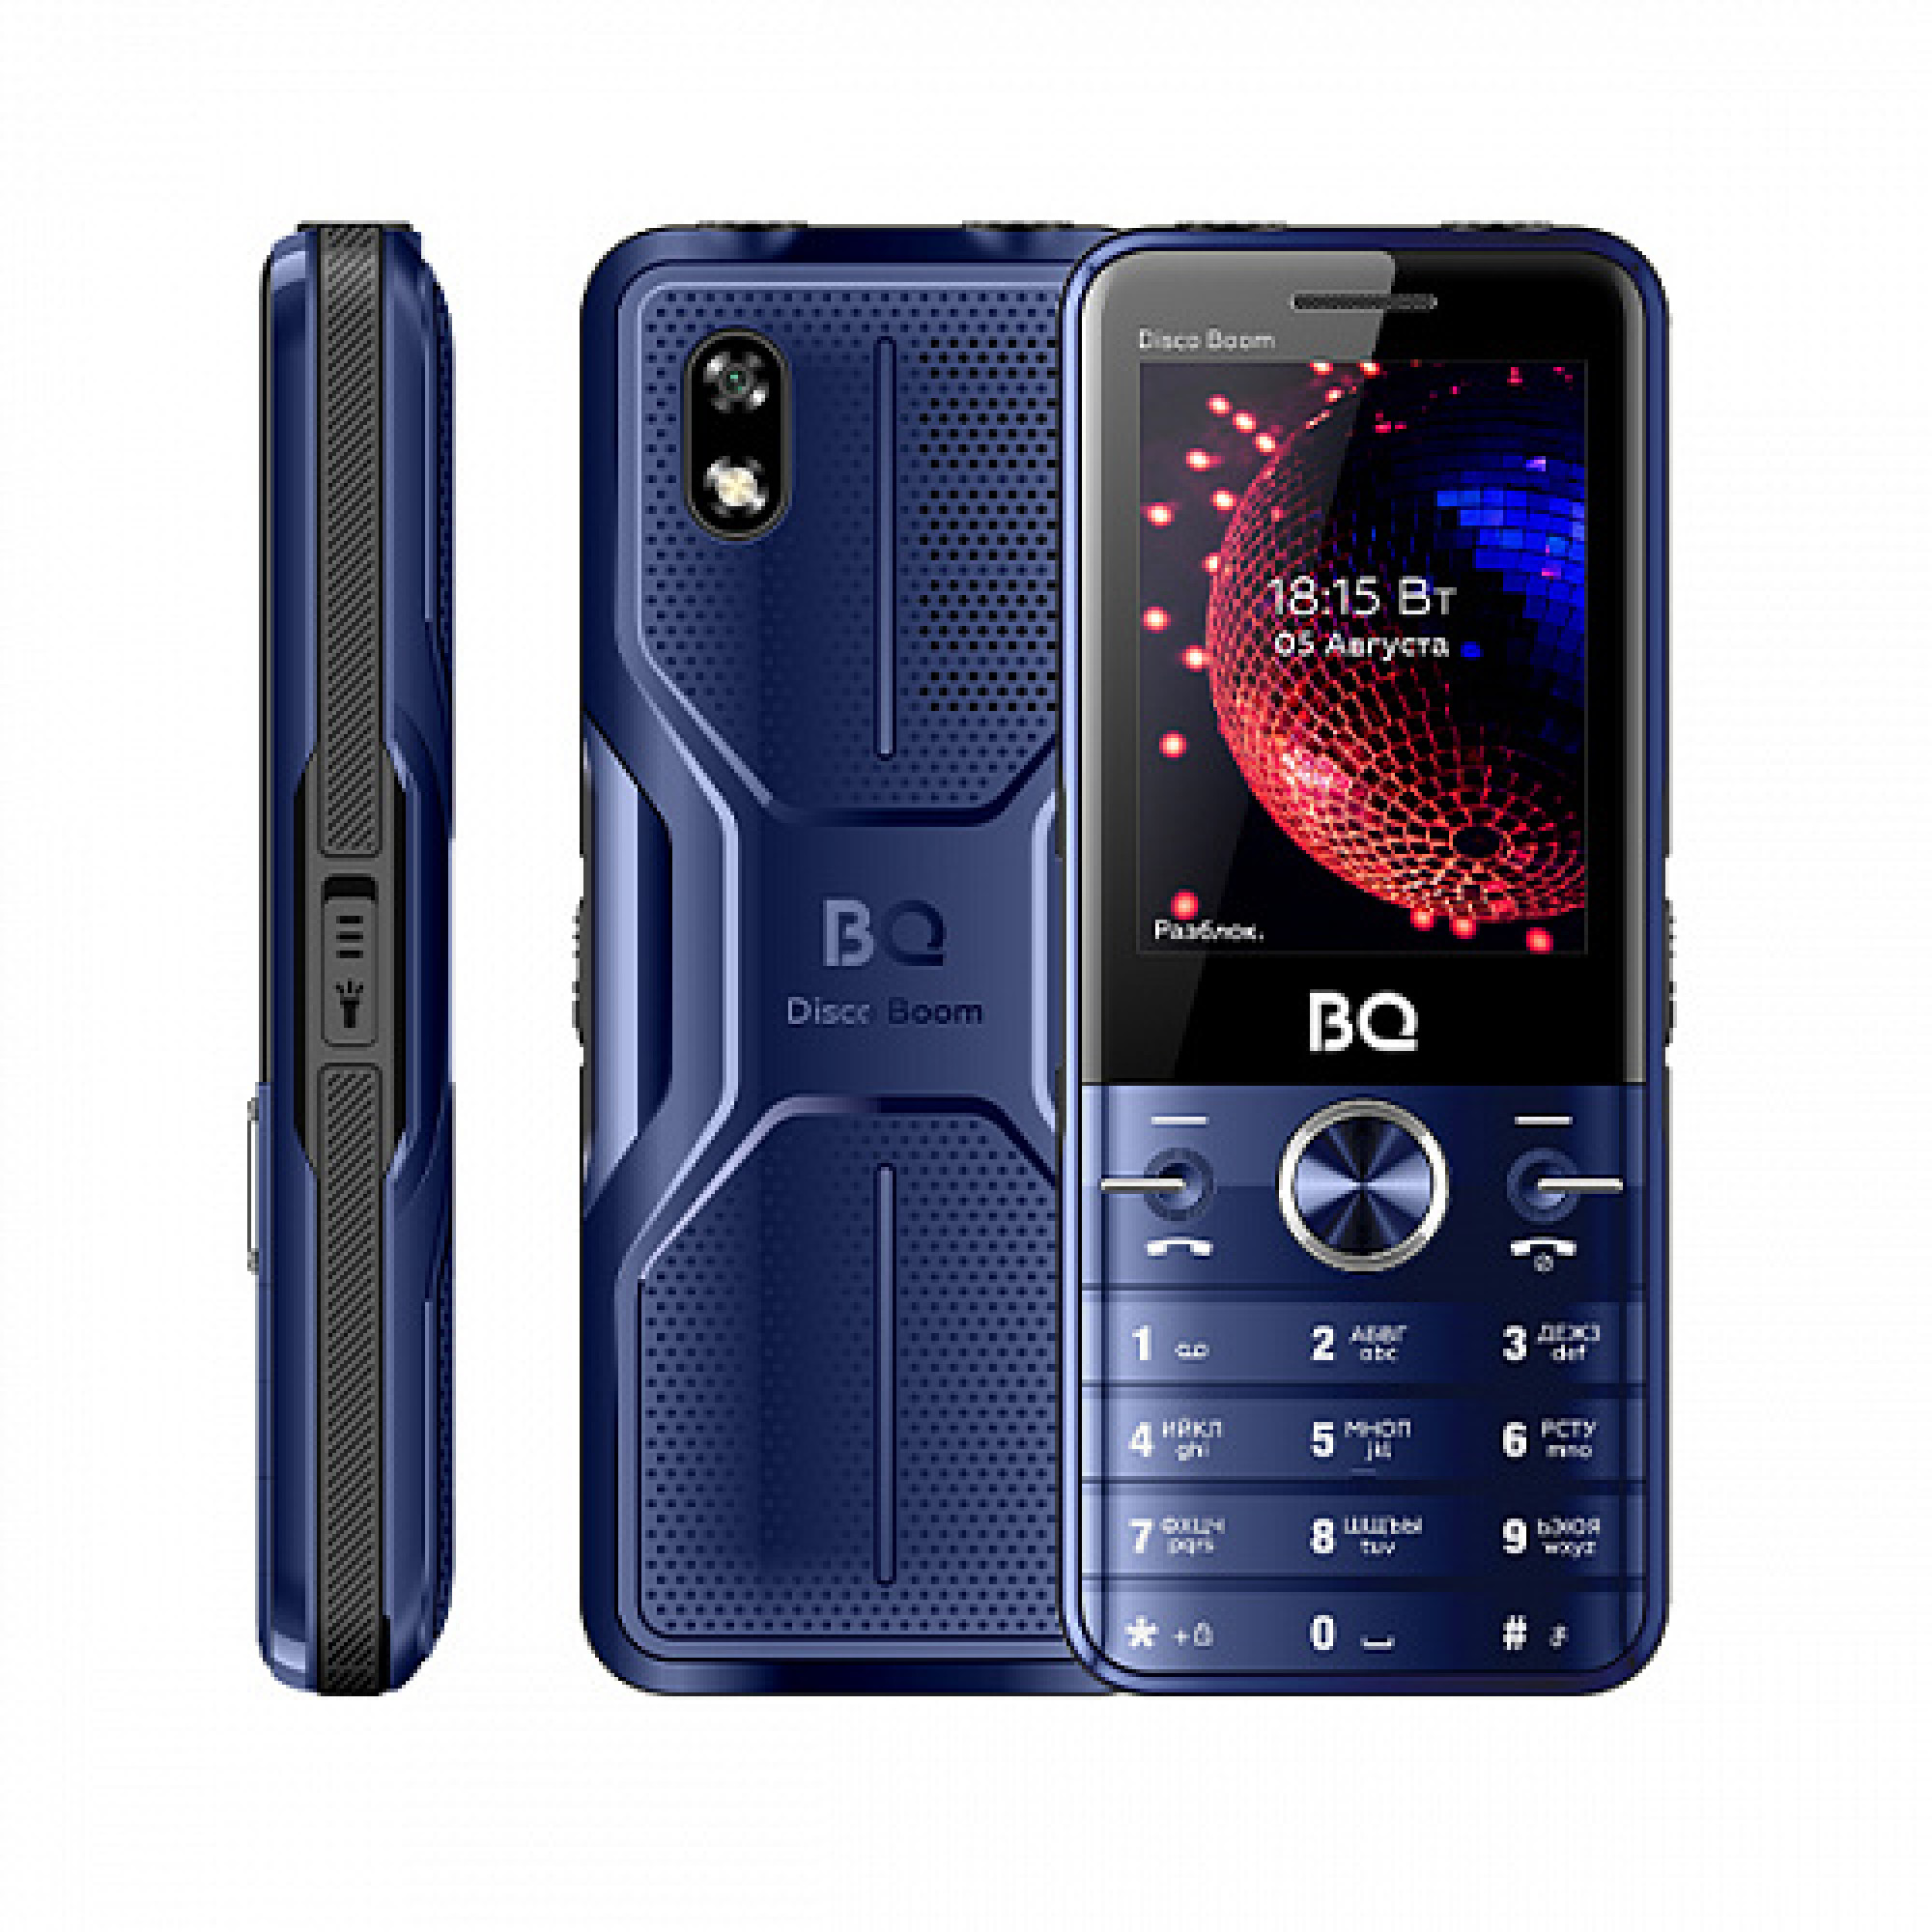 Мобильный телефон BQ BQ-2842 Disco Boom (синий)